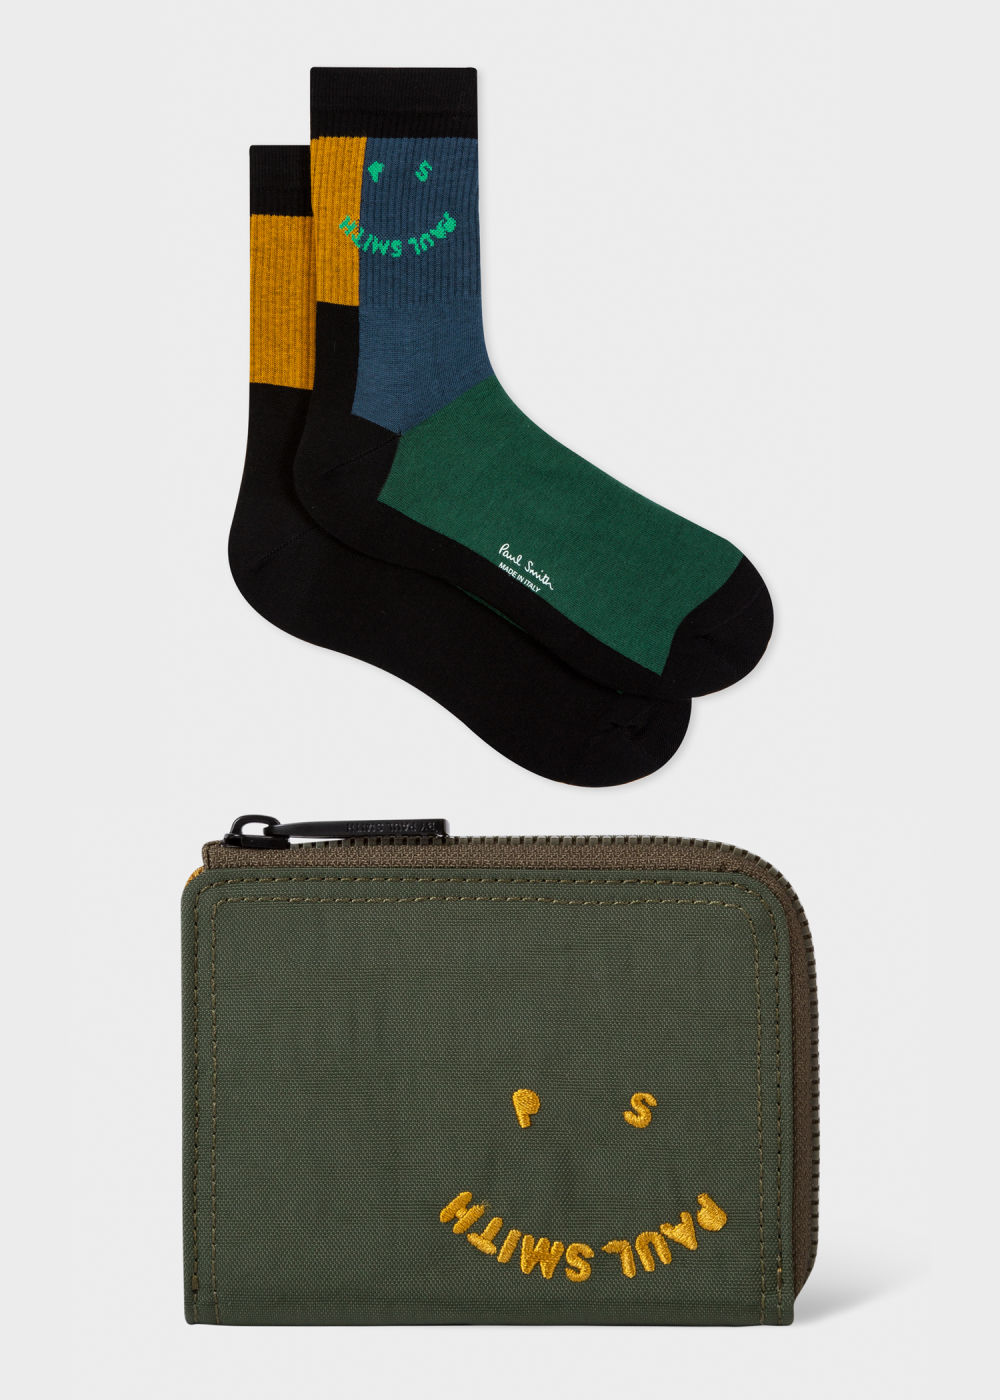 'Happy' Zip-Around Wallet & Socks Gift Set